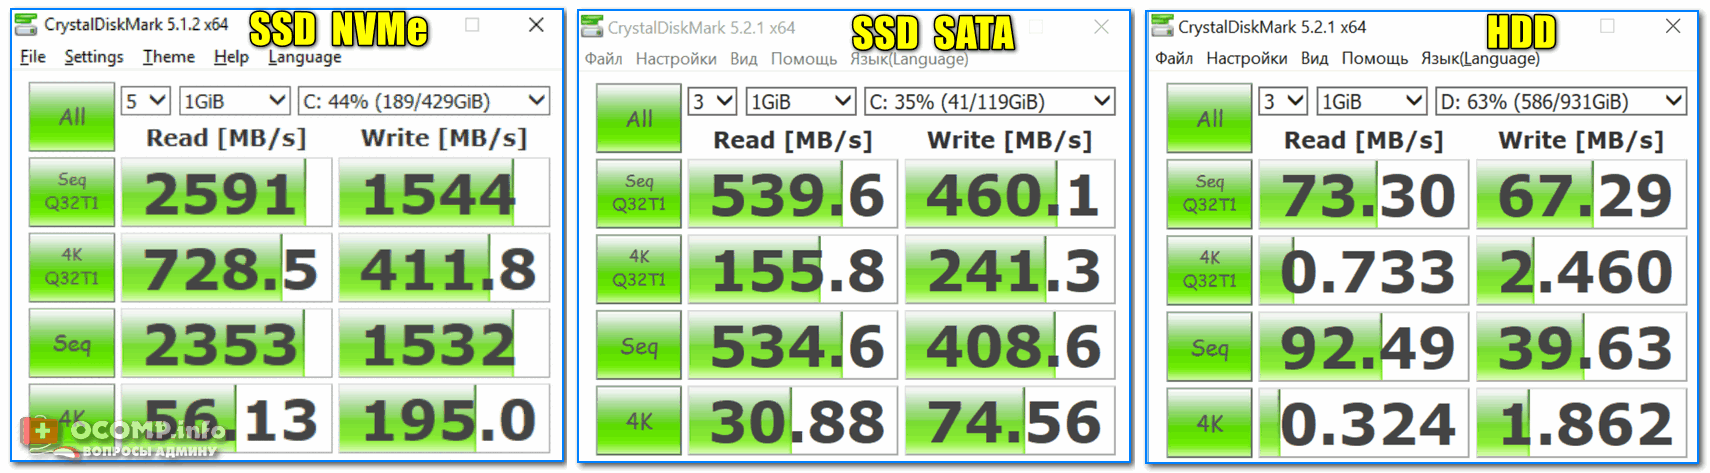 Тест скорости накопителей SSD (NVMe, SATA), HDD | Кликабельно (Crystal DiskMark - утилита для теста)